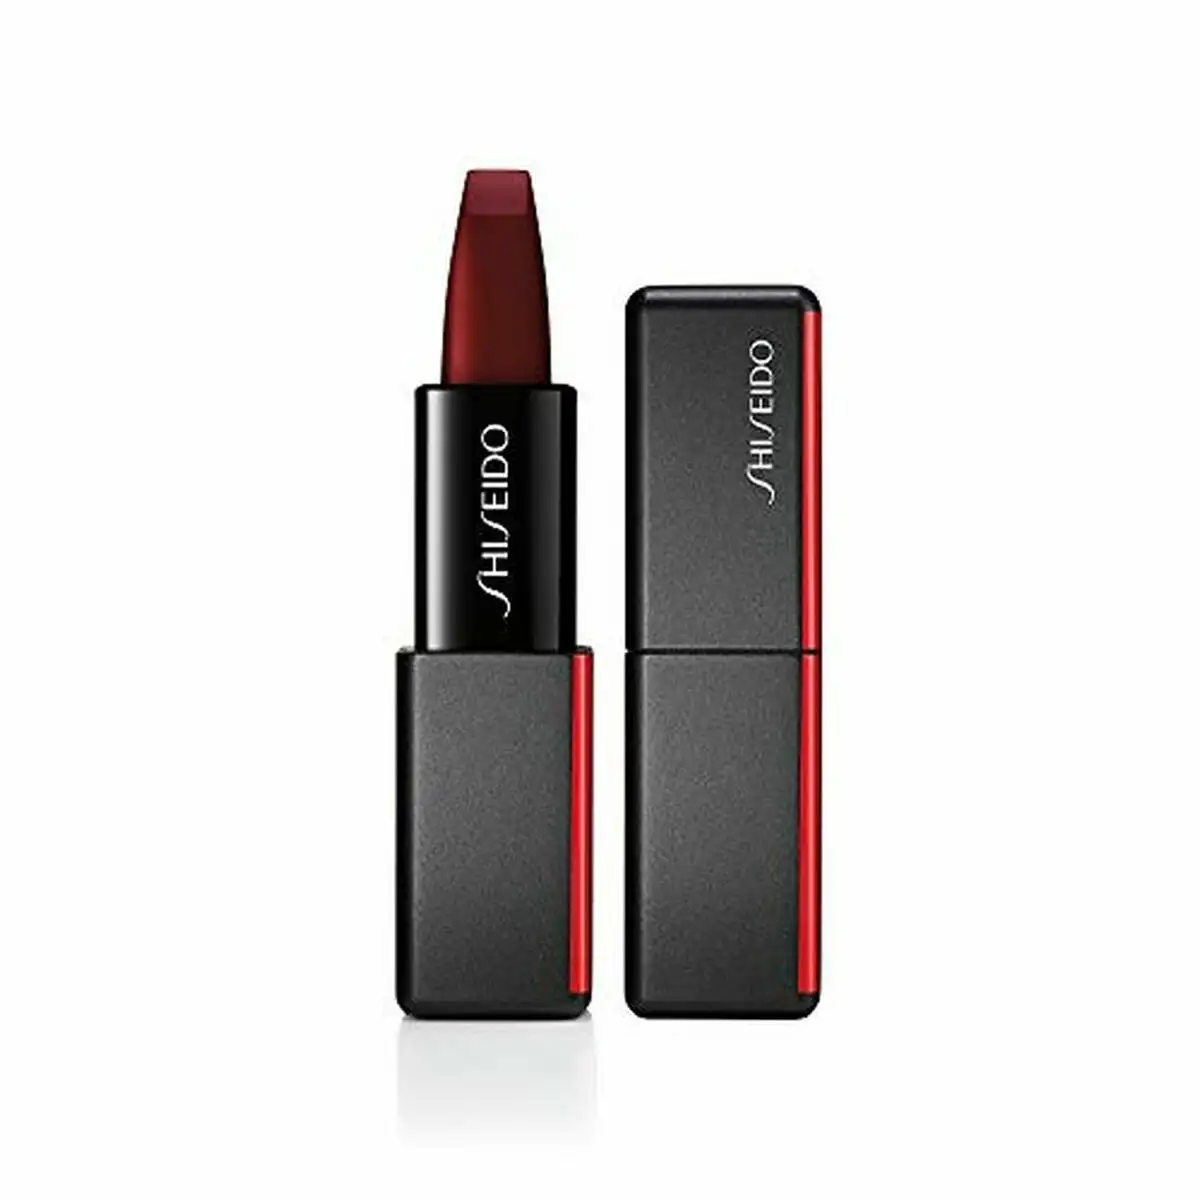 Rouge a levres modernmatte shiseido 522 velvet rope 4 g _5889. DIAYTAR SENEGAL - Où la Tradition Renouvelée Rencontre l'Innovation. Explorez notre gamme de produits qui fusionnent l'héritage culturel avec les besoins contemporains.